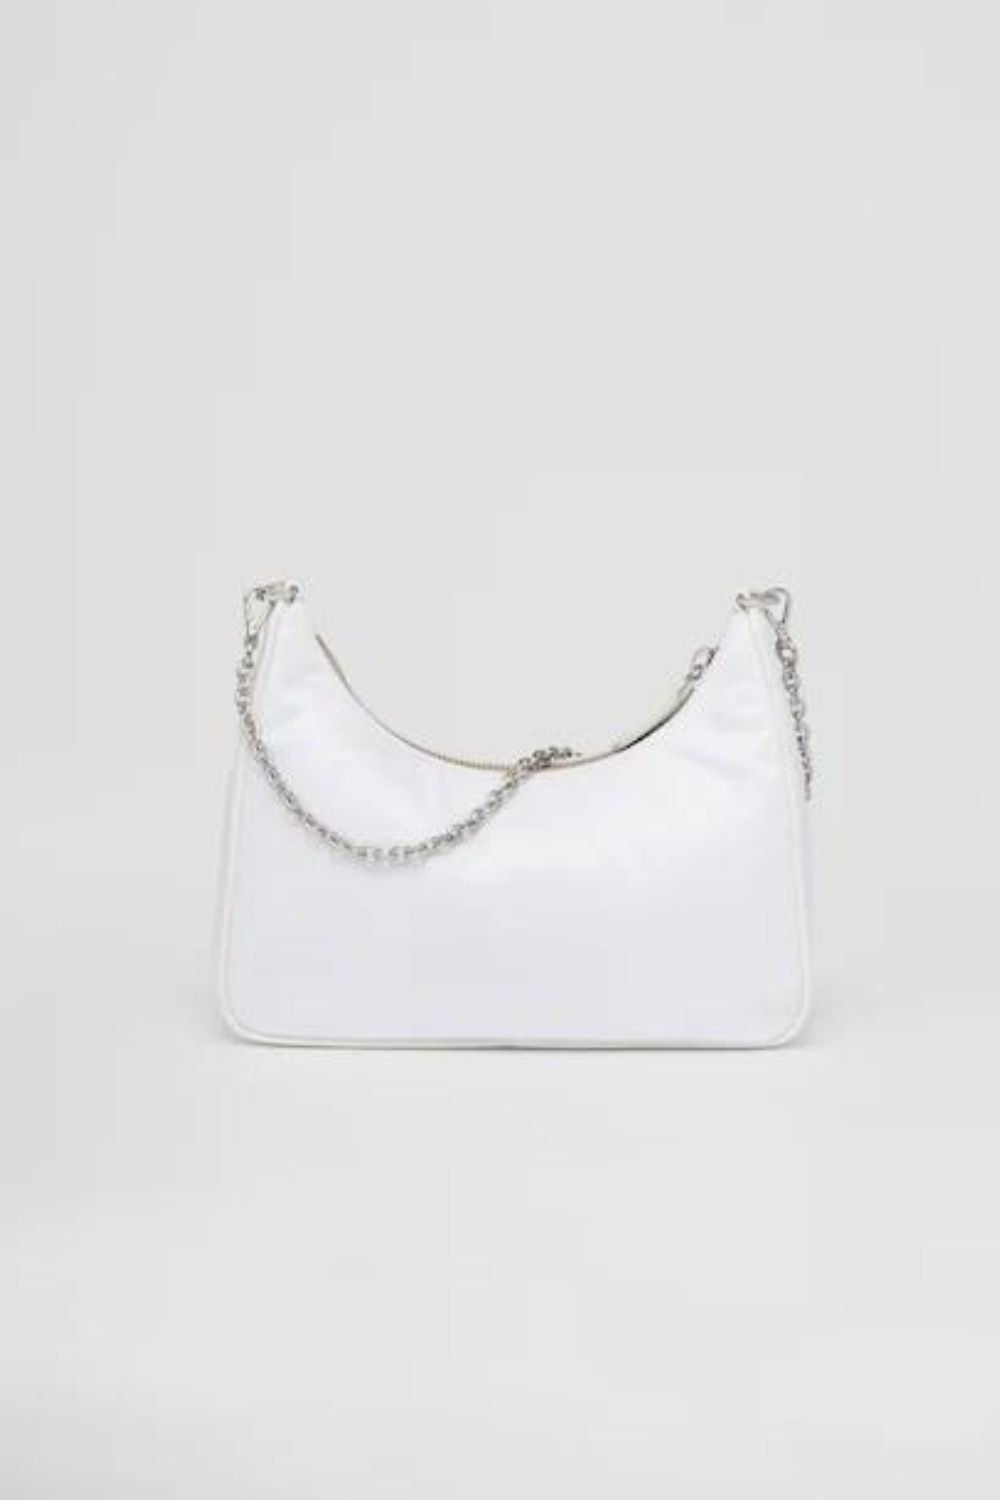 Prada | Re edition 2005 Shoulder Bag | White